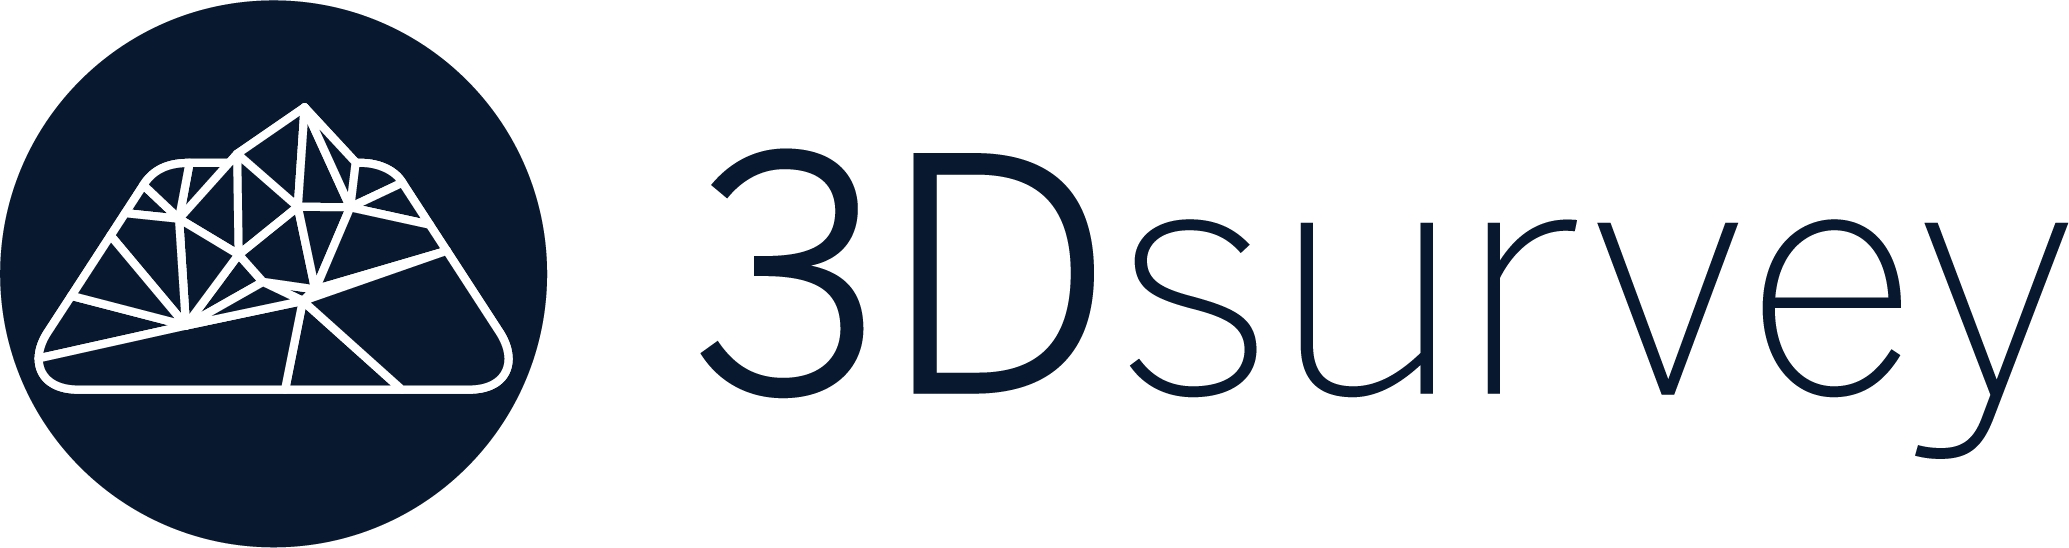 3DSurvey logo